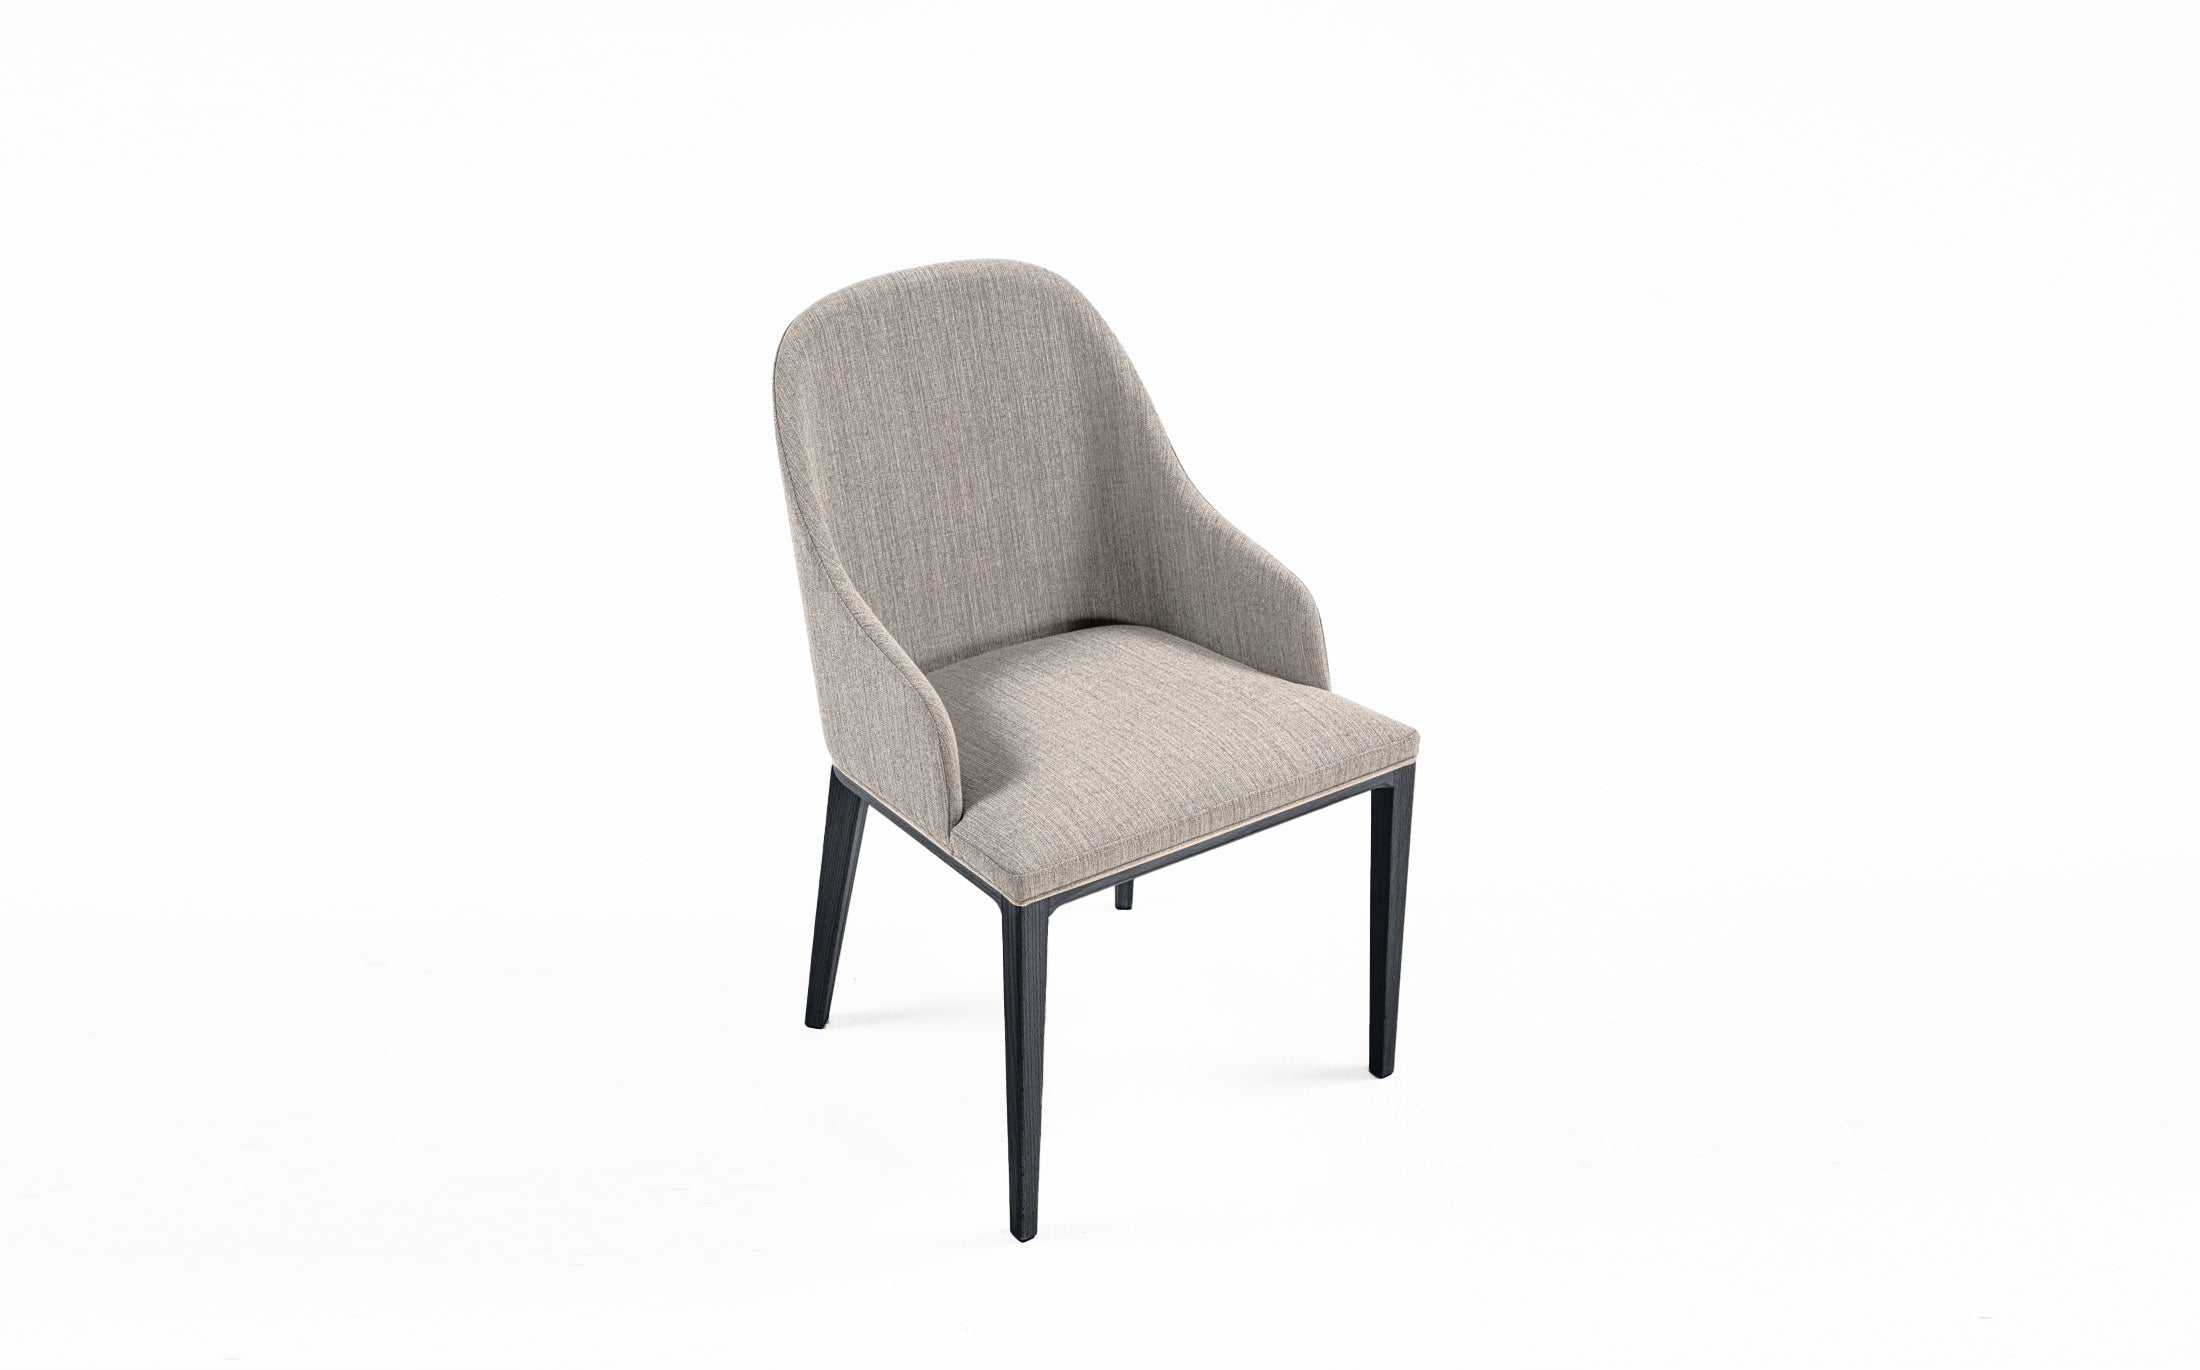 Philip half armchair #Seat materials_fabric1 riff 13/08